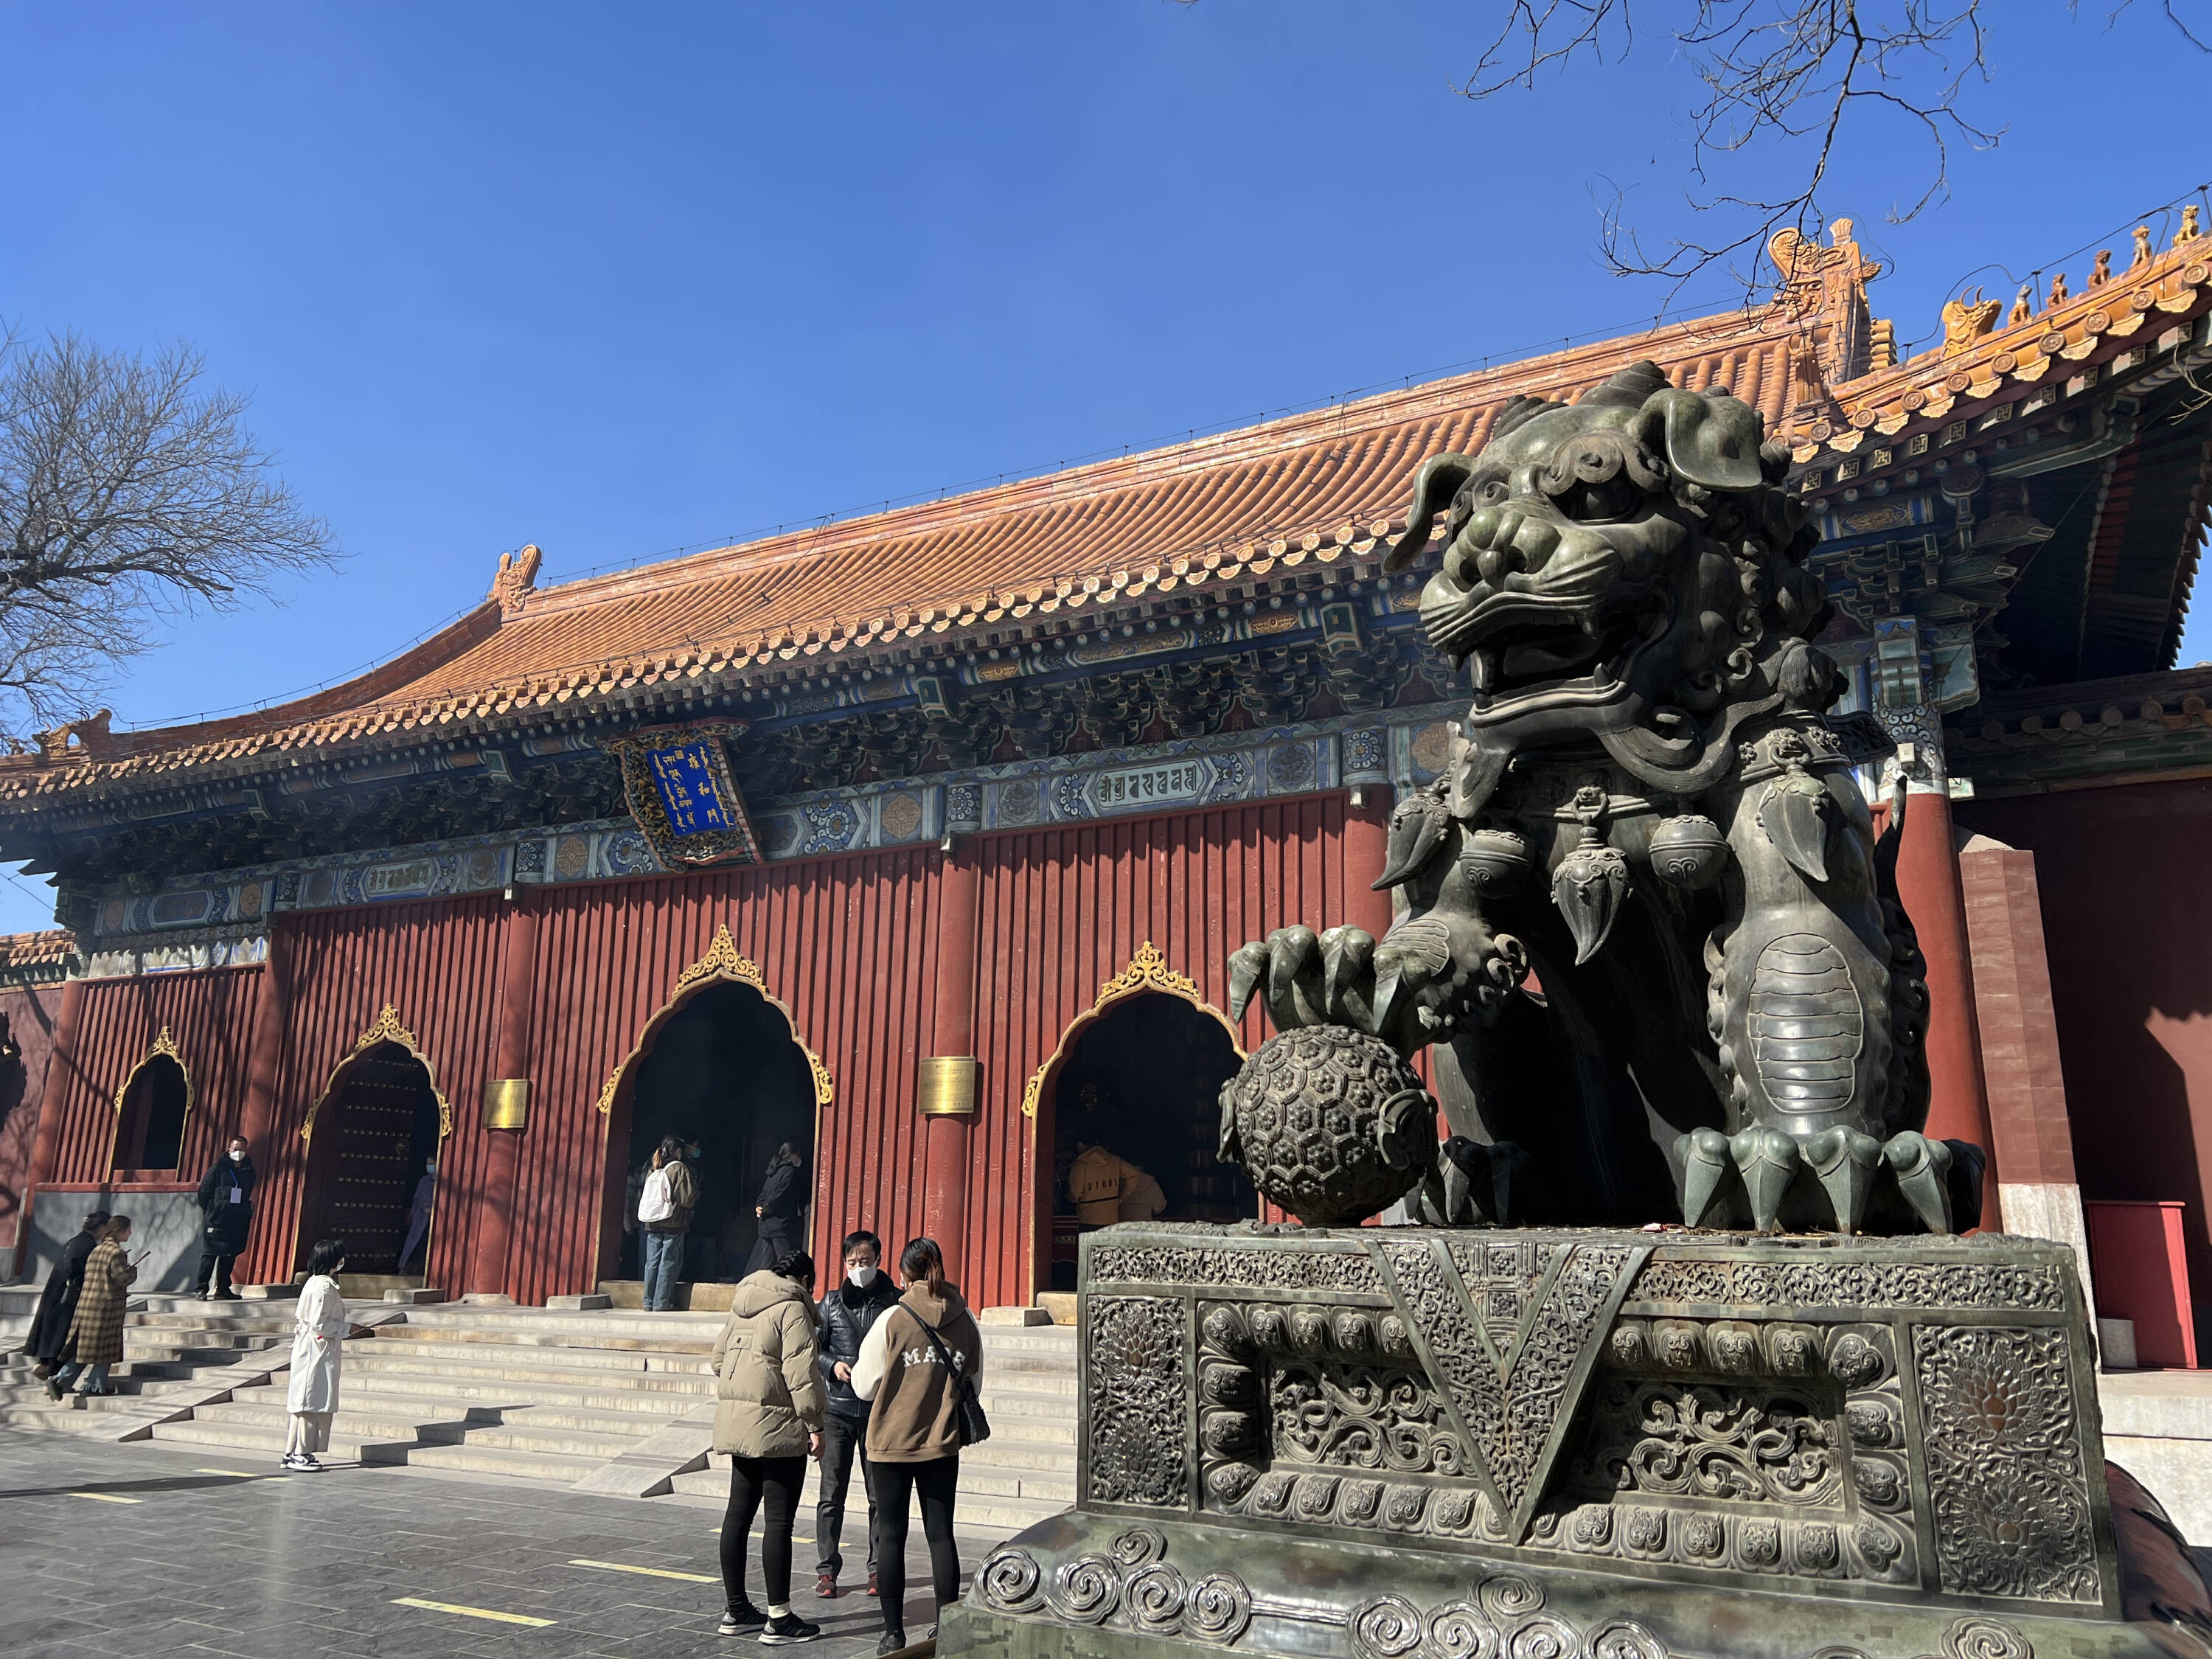 León de bronce en entrada del Templo Lama en Pekín